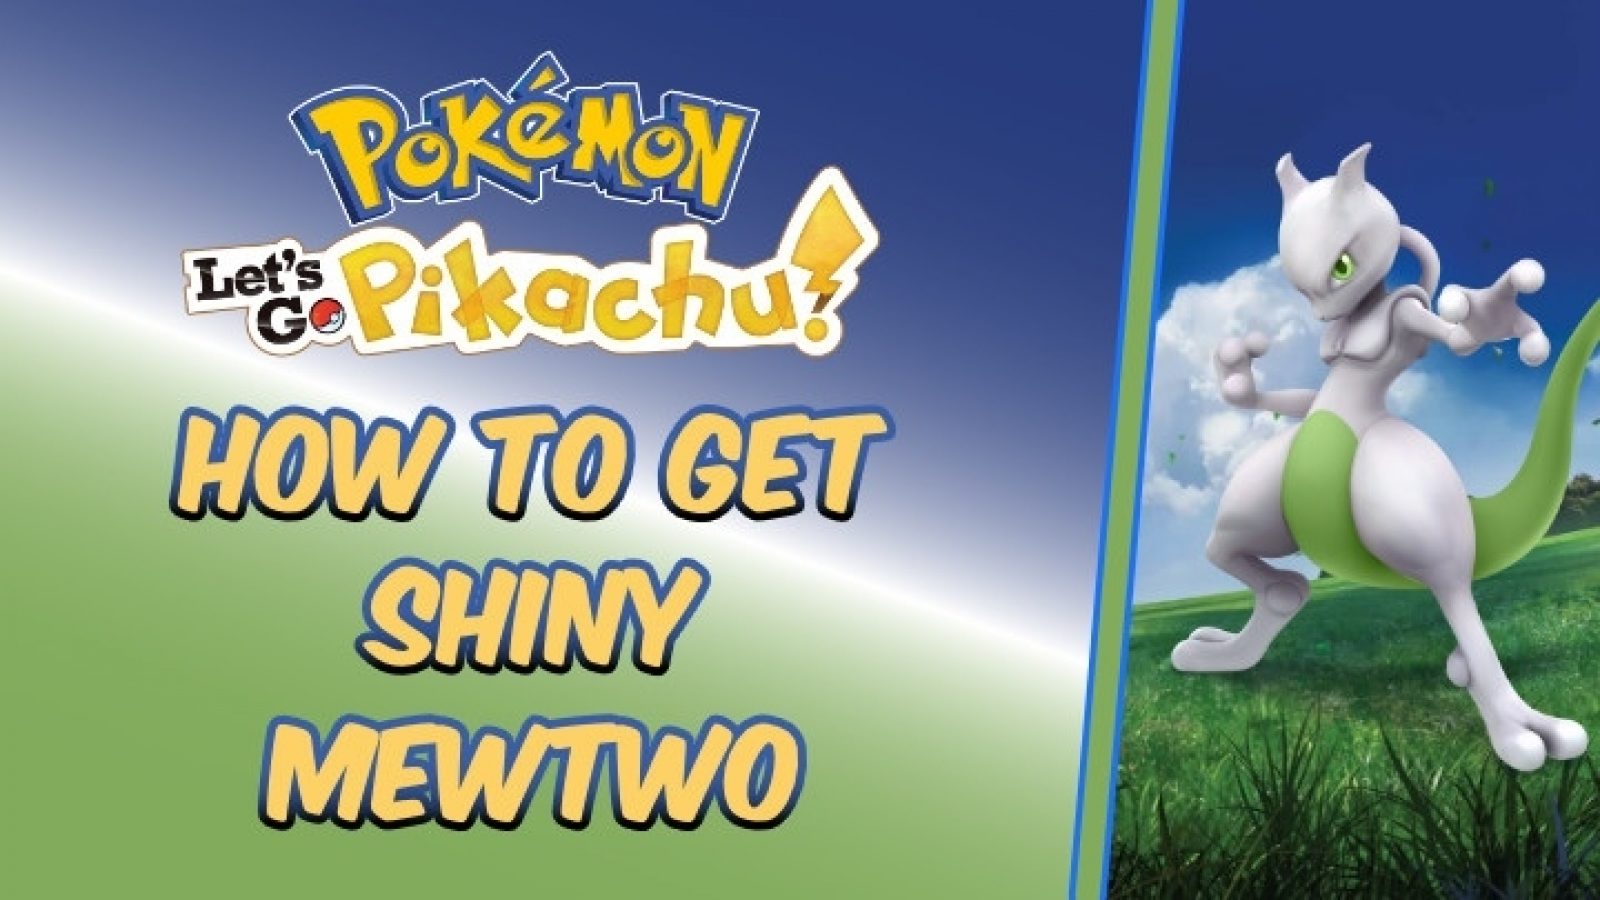 Shiny Legendary Mewtwo / Pokemon Let's Go / 6IV Pokemon / Shiny